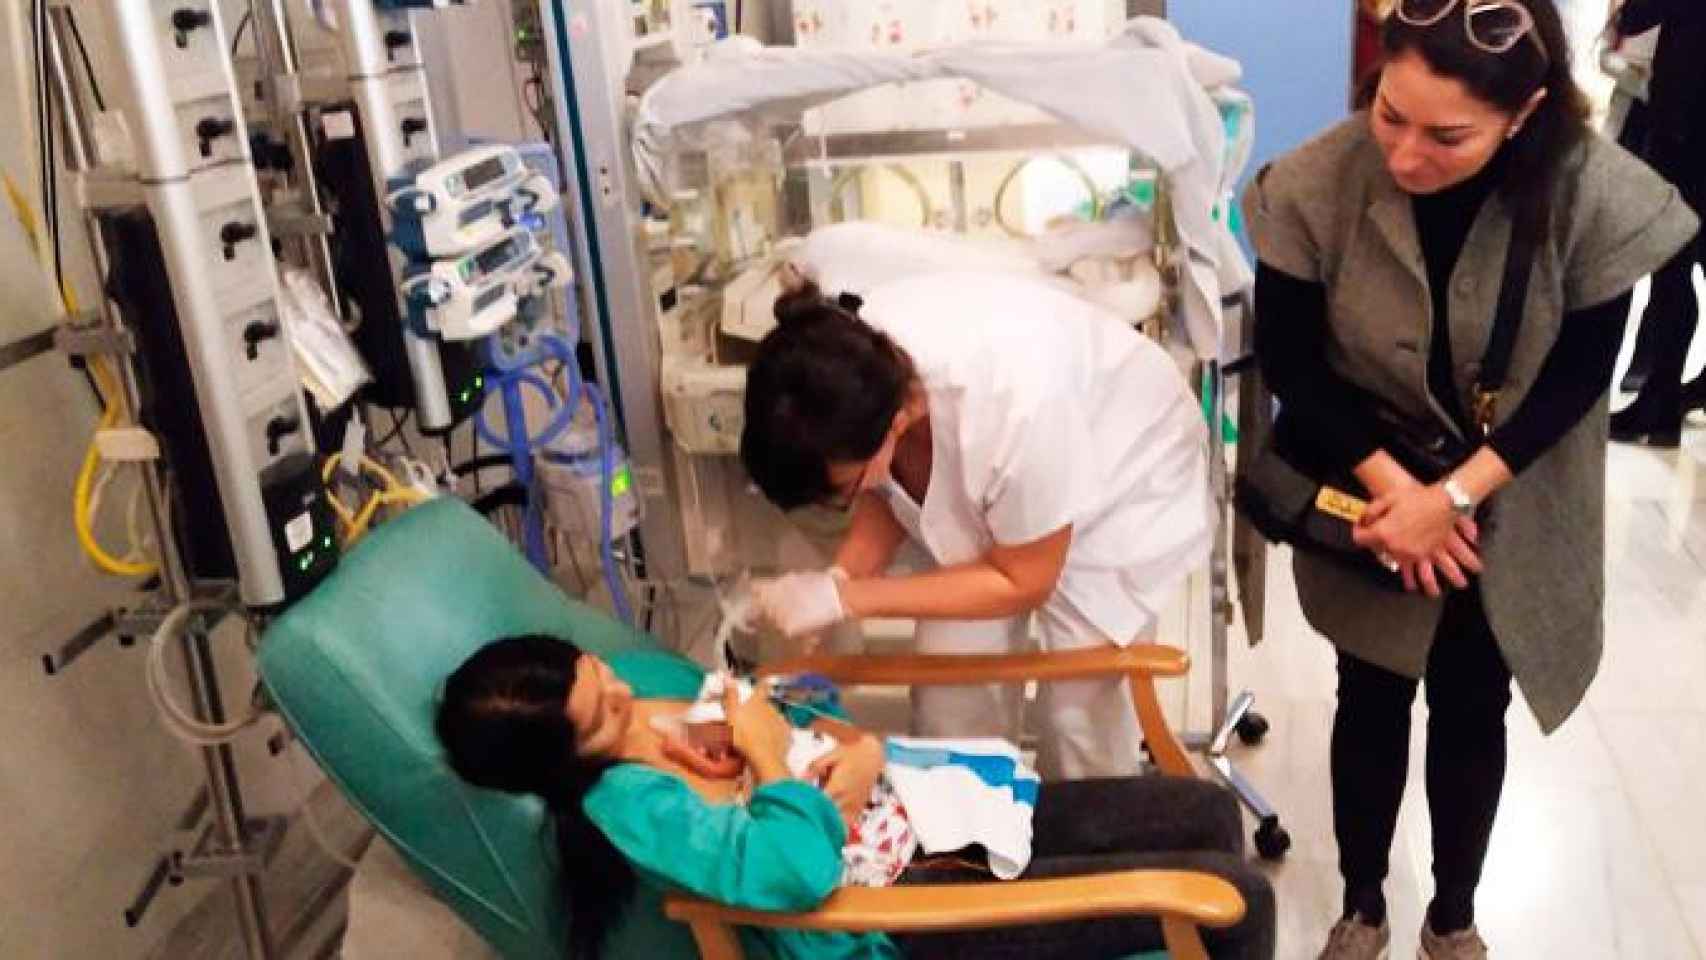 Imagen de Neonatología del Hospital Vall d'Hebron de Barcelona, donde murieron dos bebés por infección bacteriana la pasada semana / CG